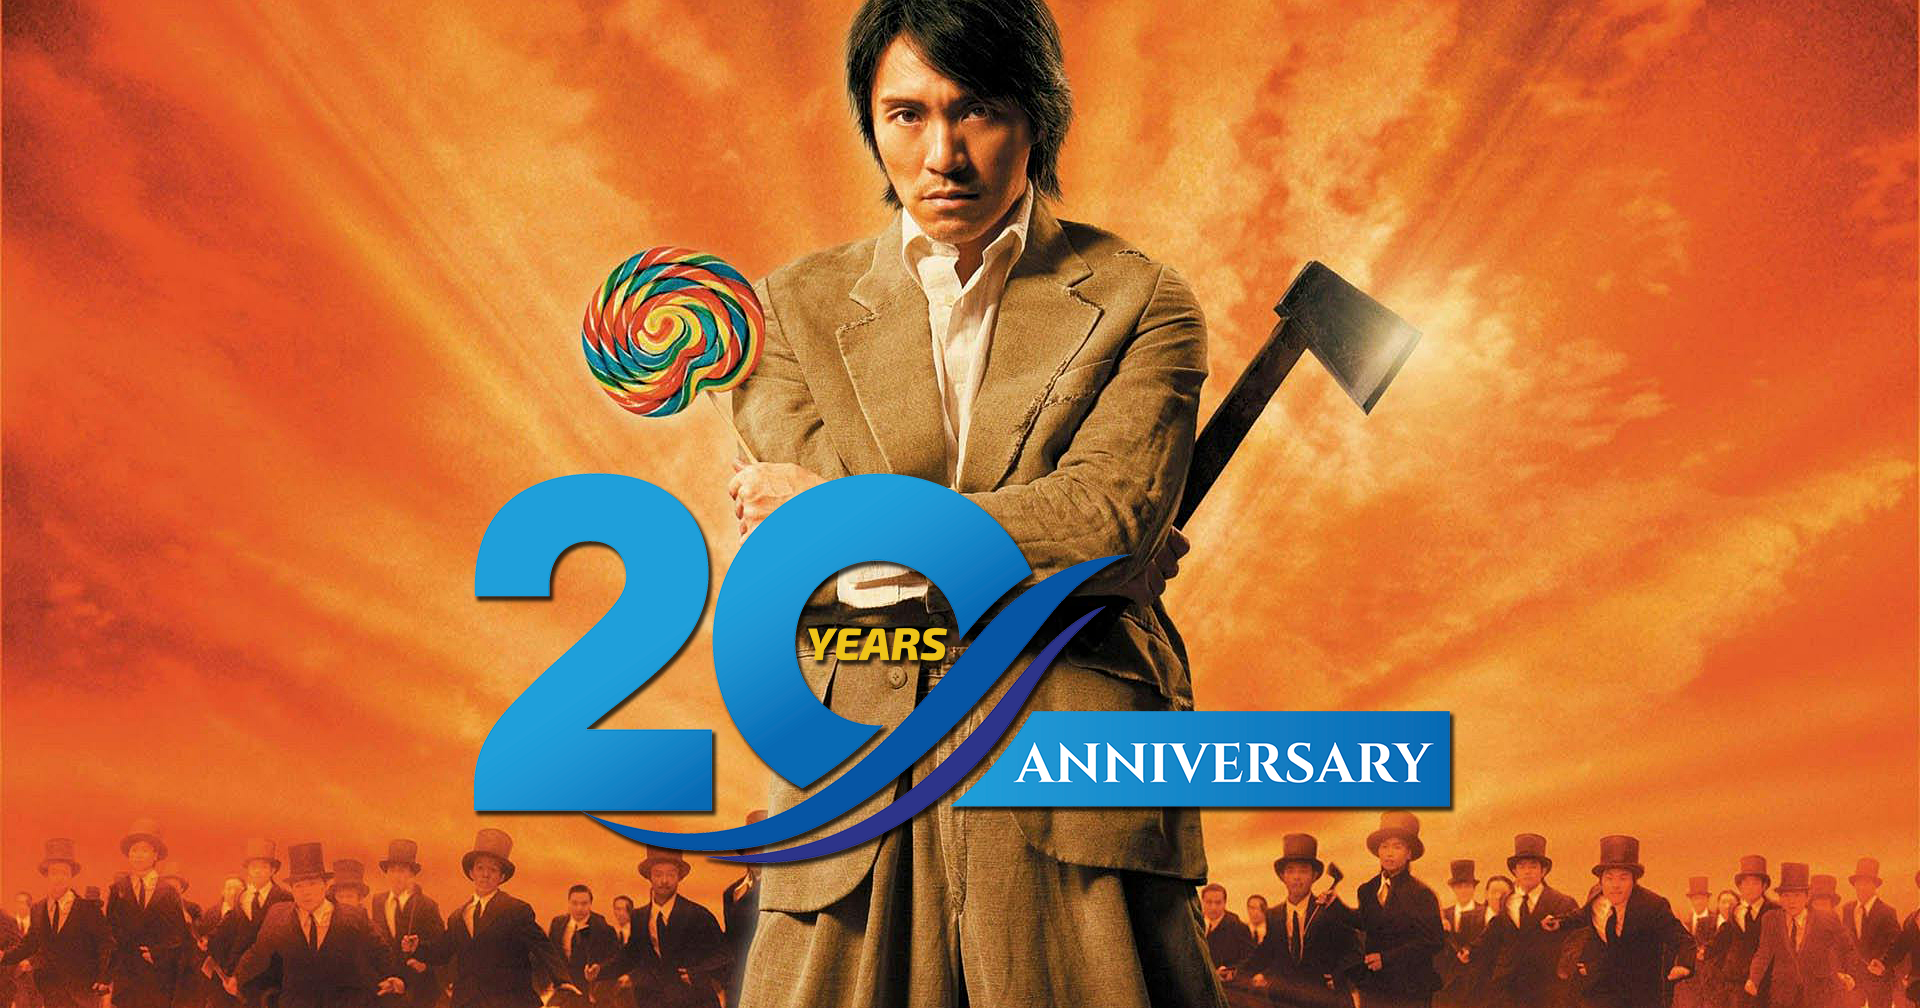 20 ปี ‘Kung Fu Hustle’ ‘คนเล็กหมัดเทวดา’ หนังตลก-กำลังภายใน ที่คนทั่วโลกชื่นชอบ